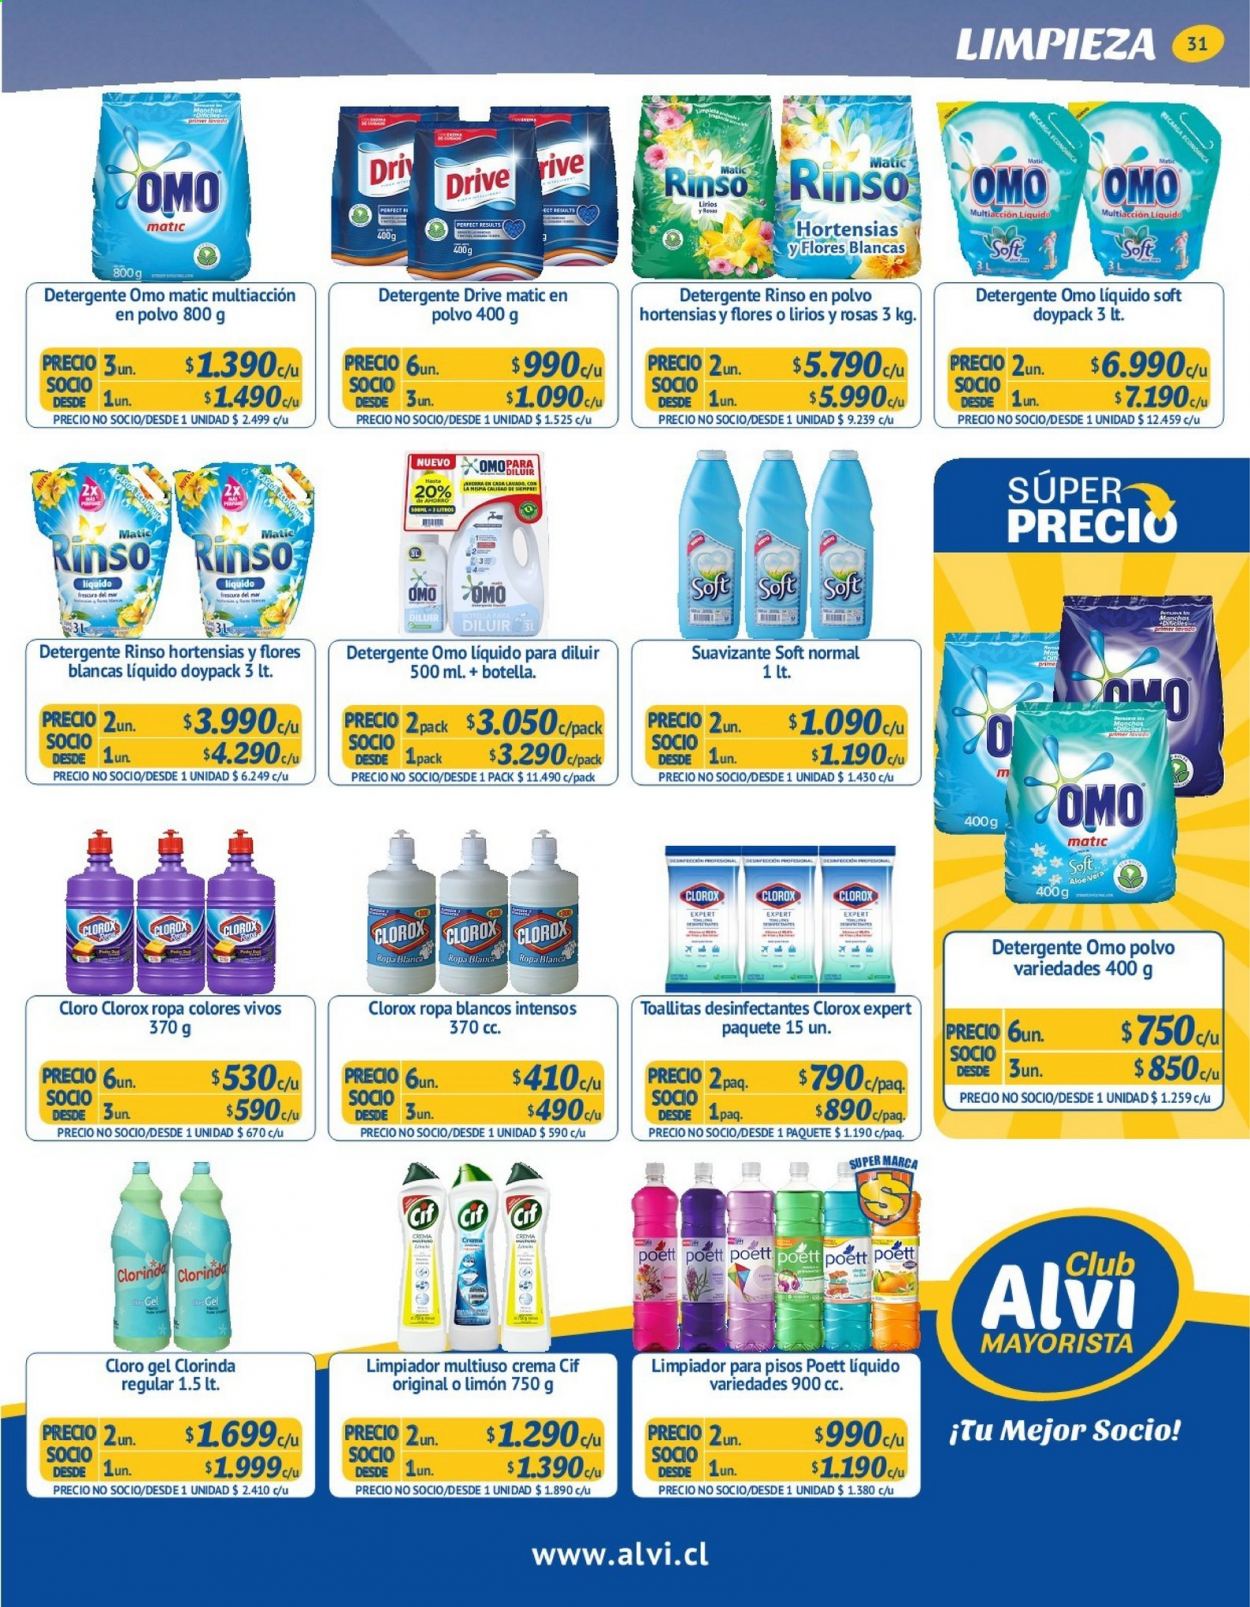 thumbnail - Catálogo Alvi - 23.06.2021 - 20.07.2021 - Ventas - toallitas, Cif, limpiador, desinfectante, detergente. Página 31.